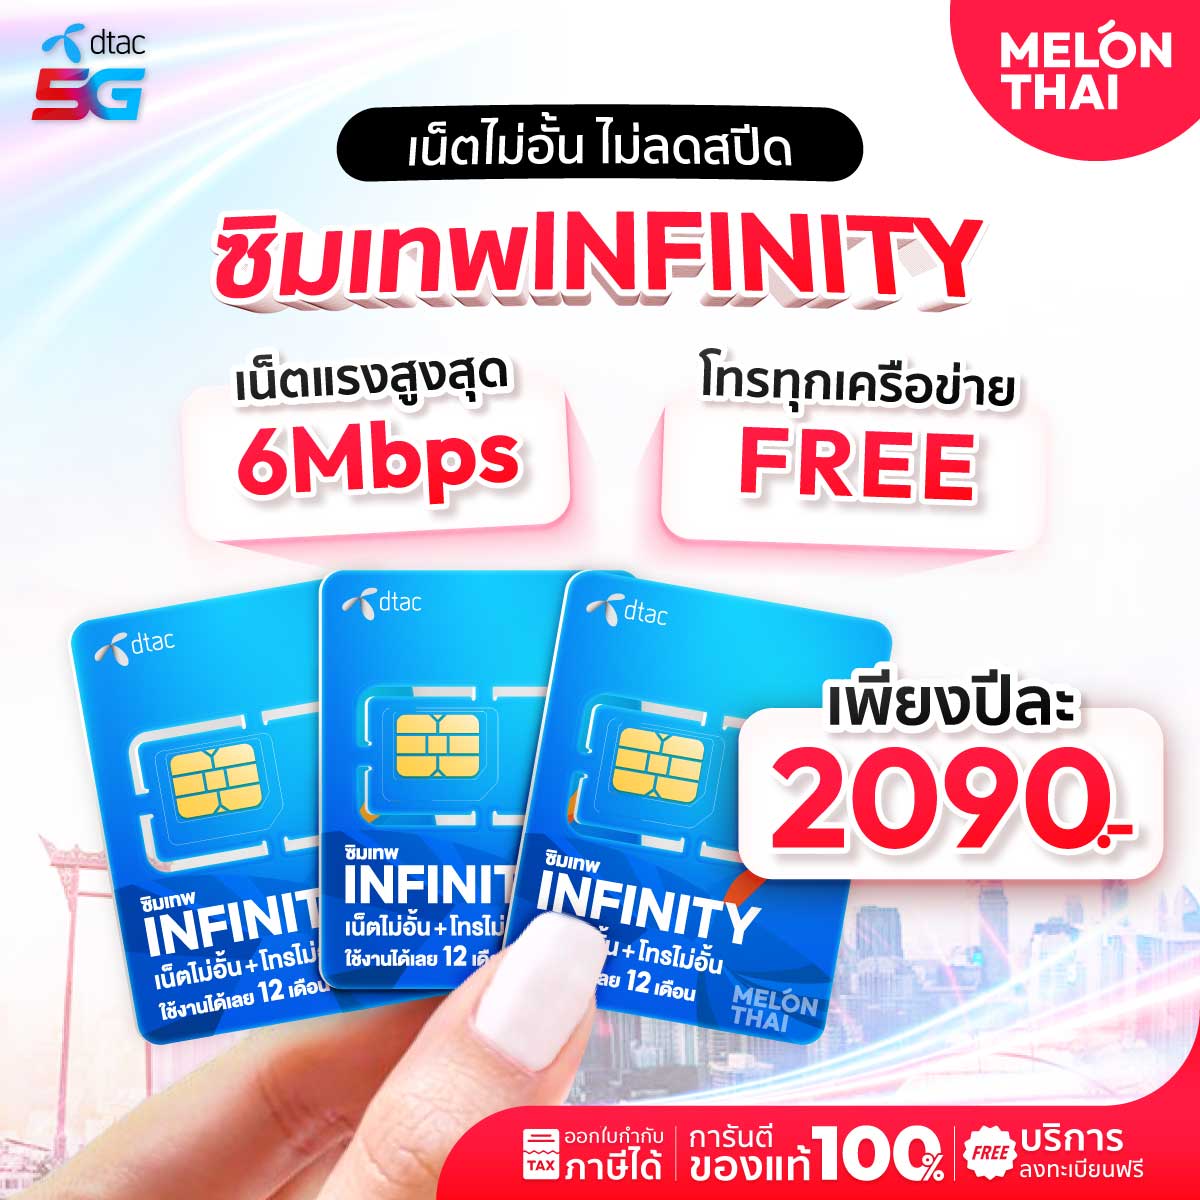 ซิมเทพดีแทค Infinity 6mbps ซิมรายปี ไม่อั้น ไม่ลดสปีด โทรฟรีทุกเครือข่าย 